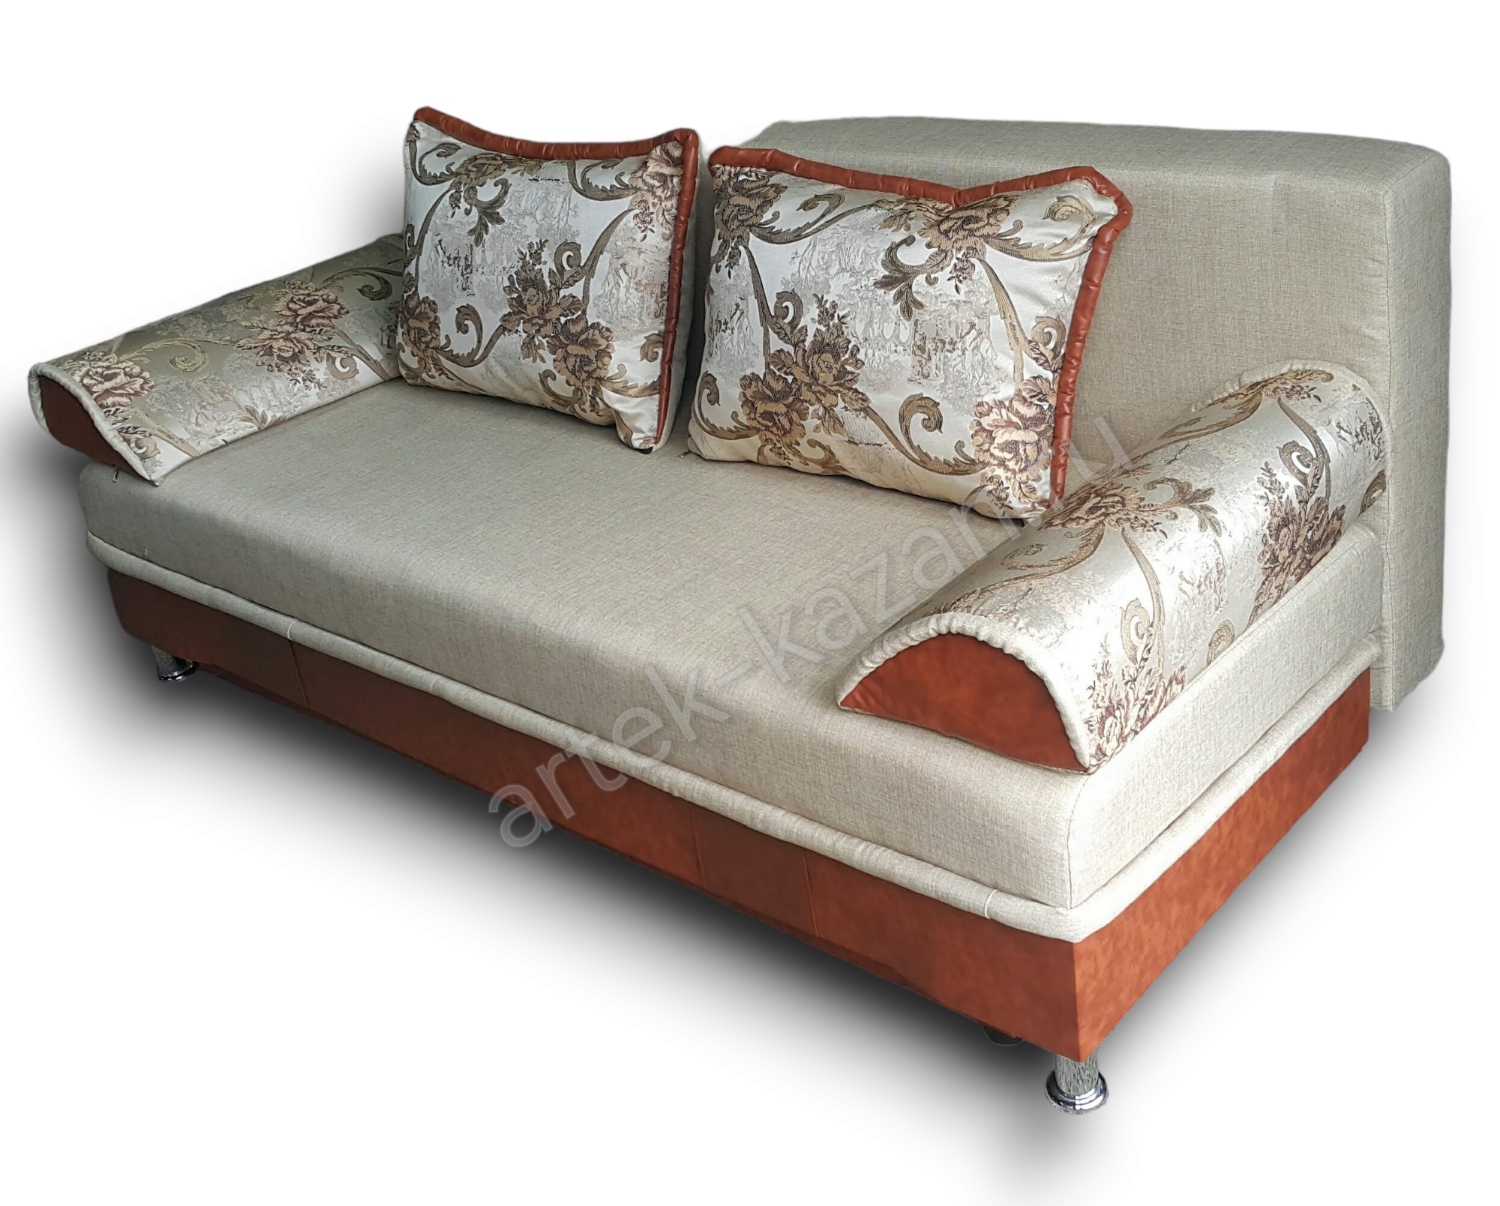 диван еврокнижка Эконом фото № 21. Купить недорогой диван по низкой цене от производителя можно у нас.